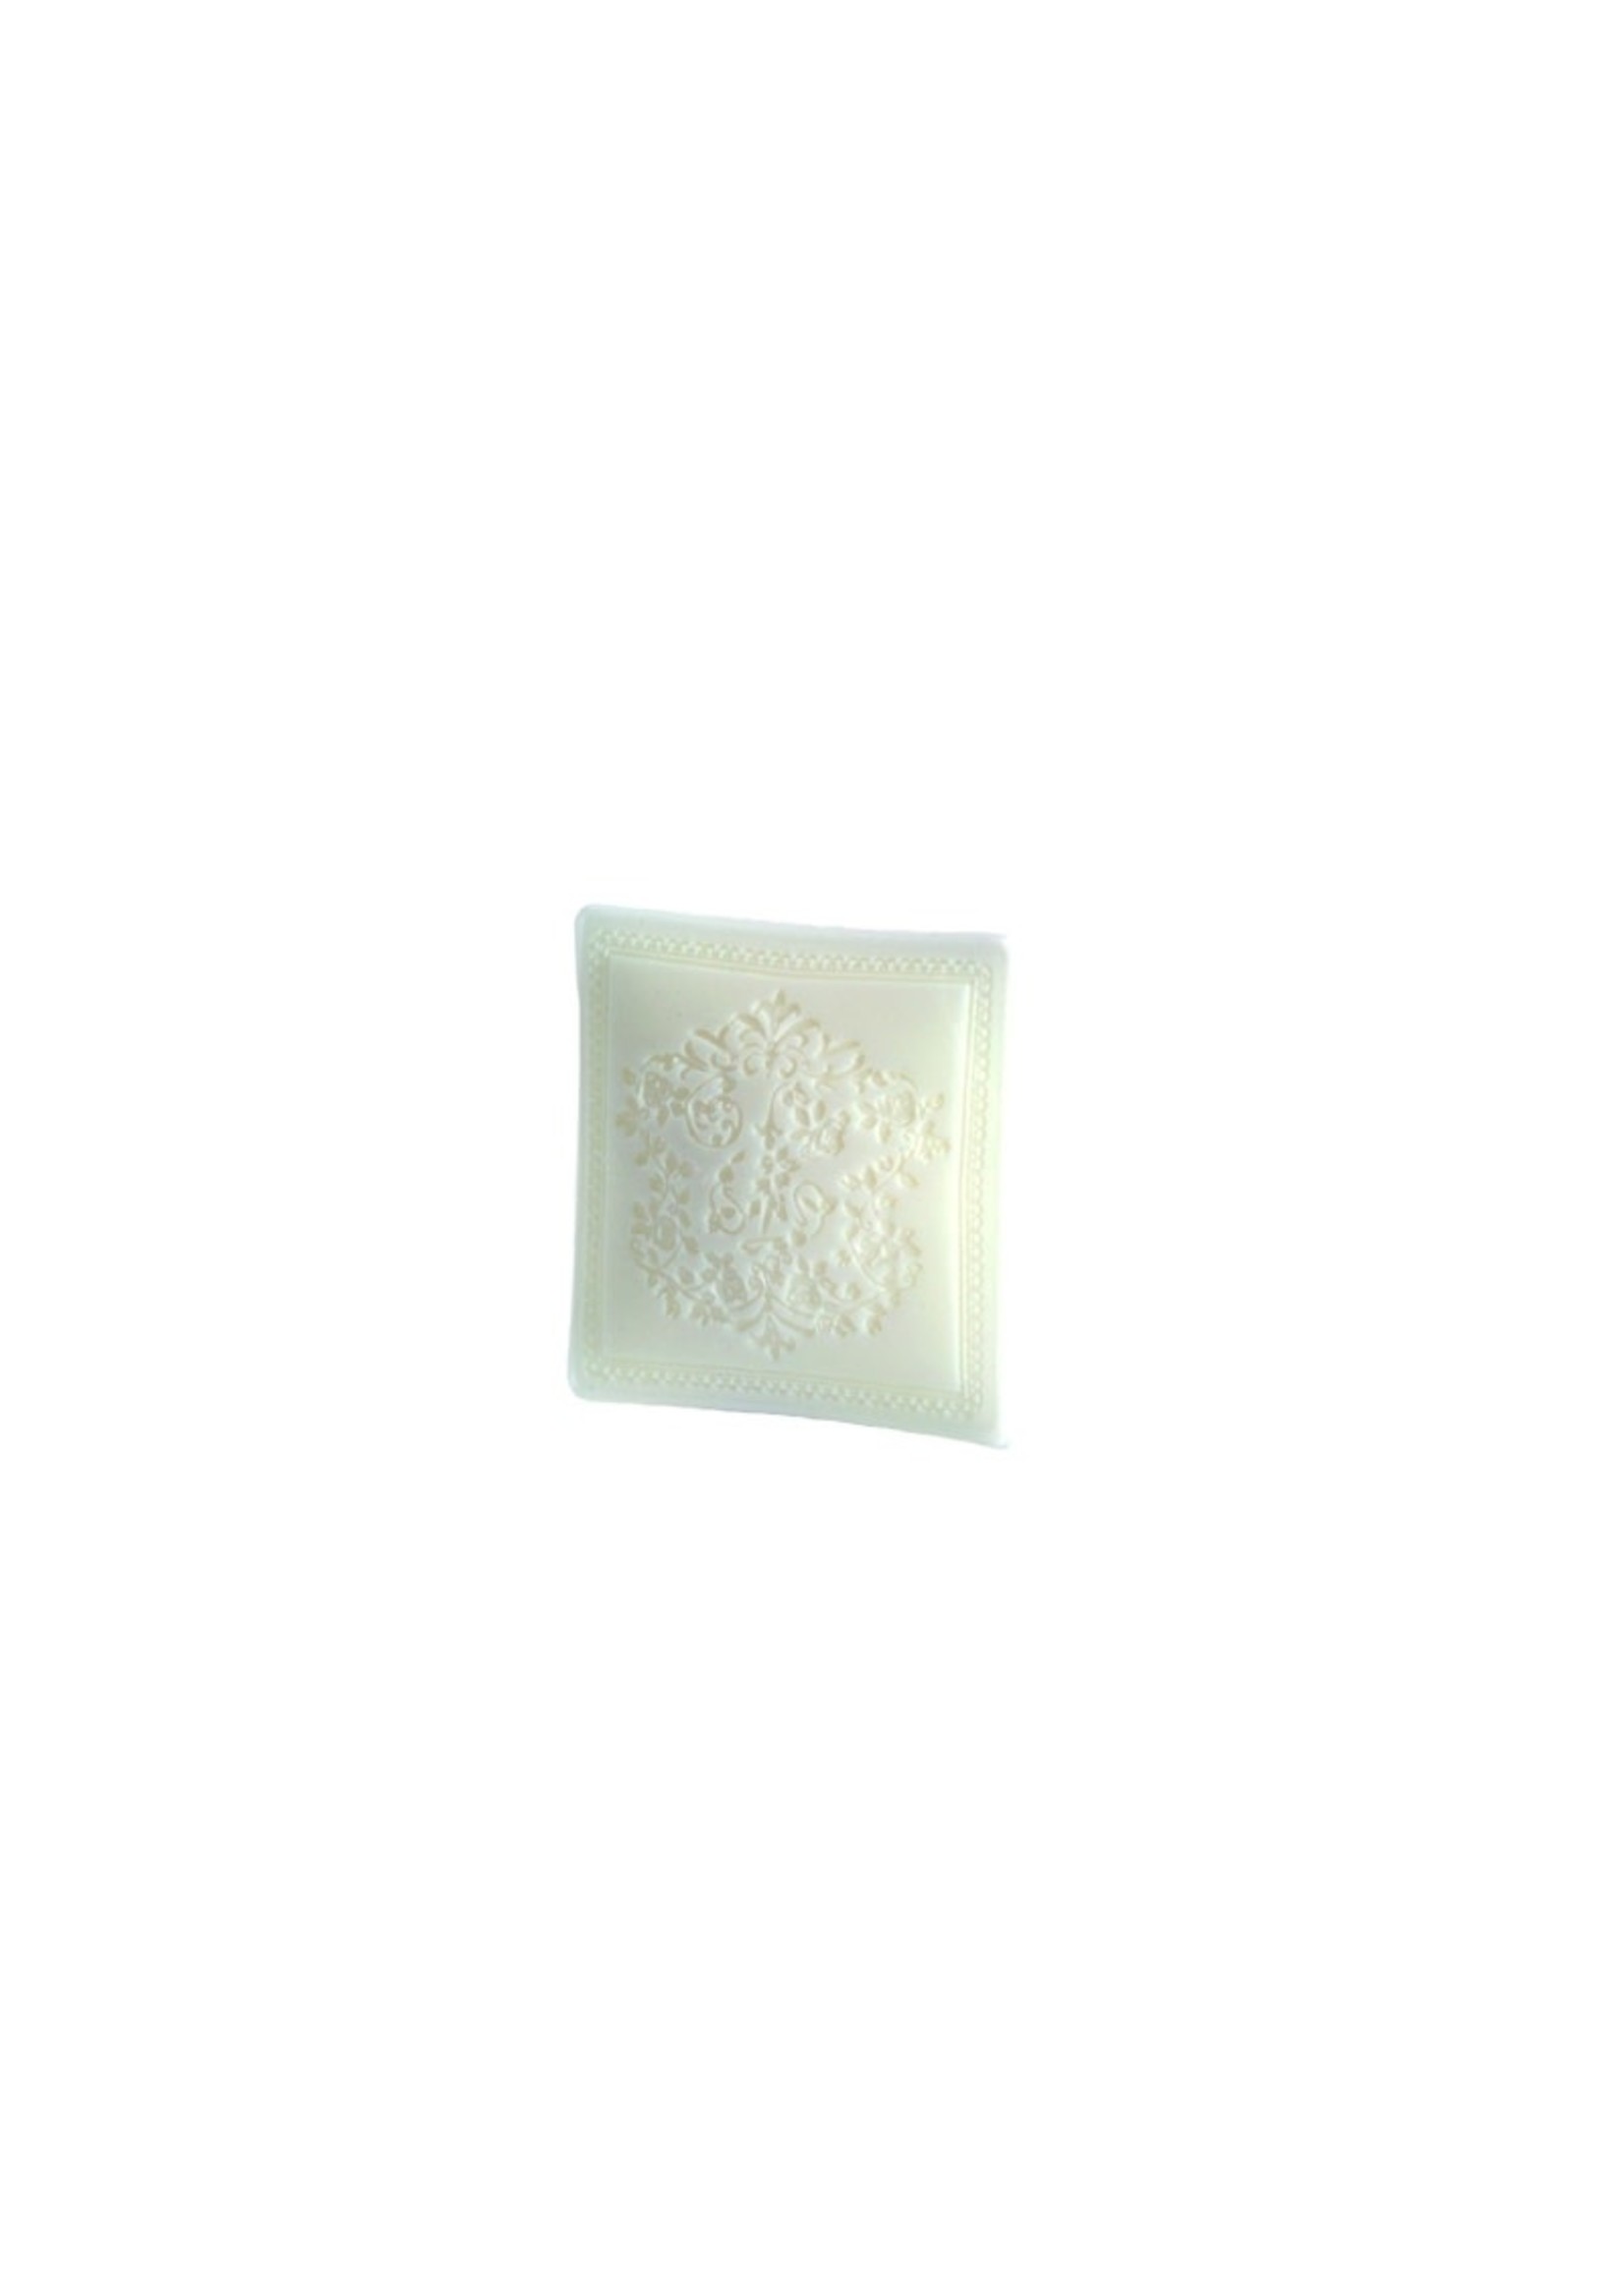 Soap - Linge Blanc 100g